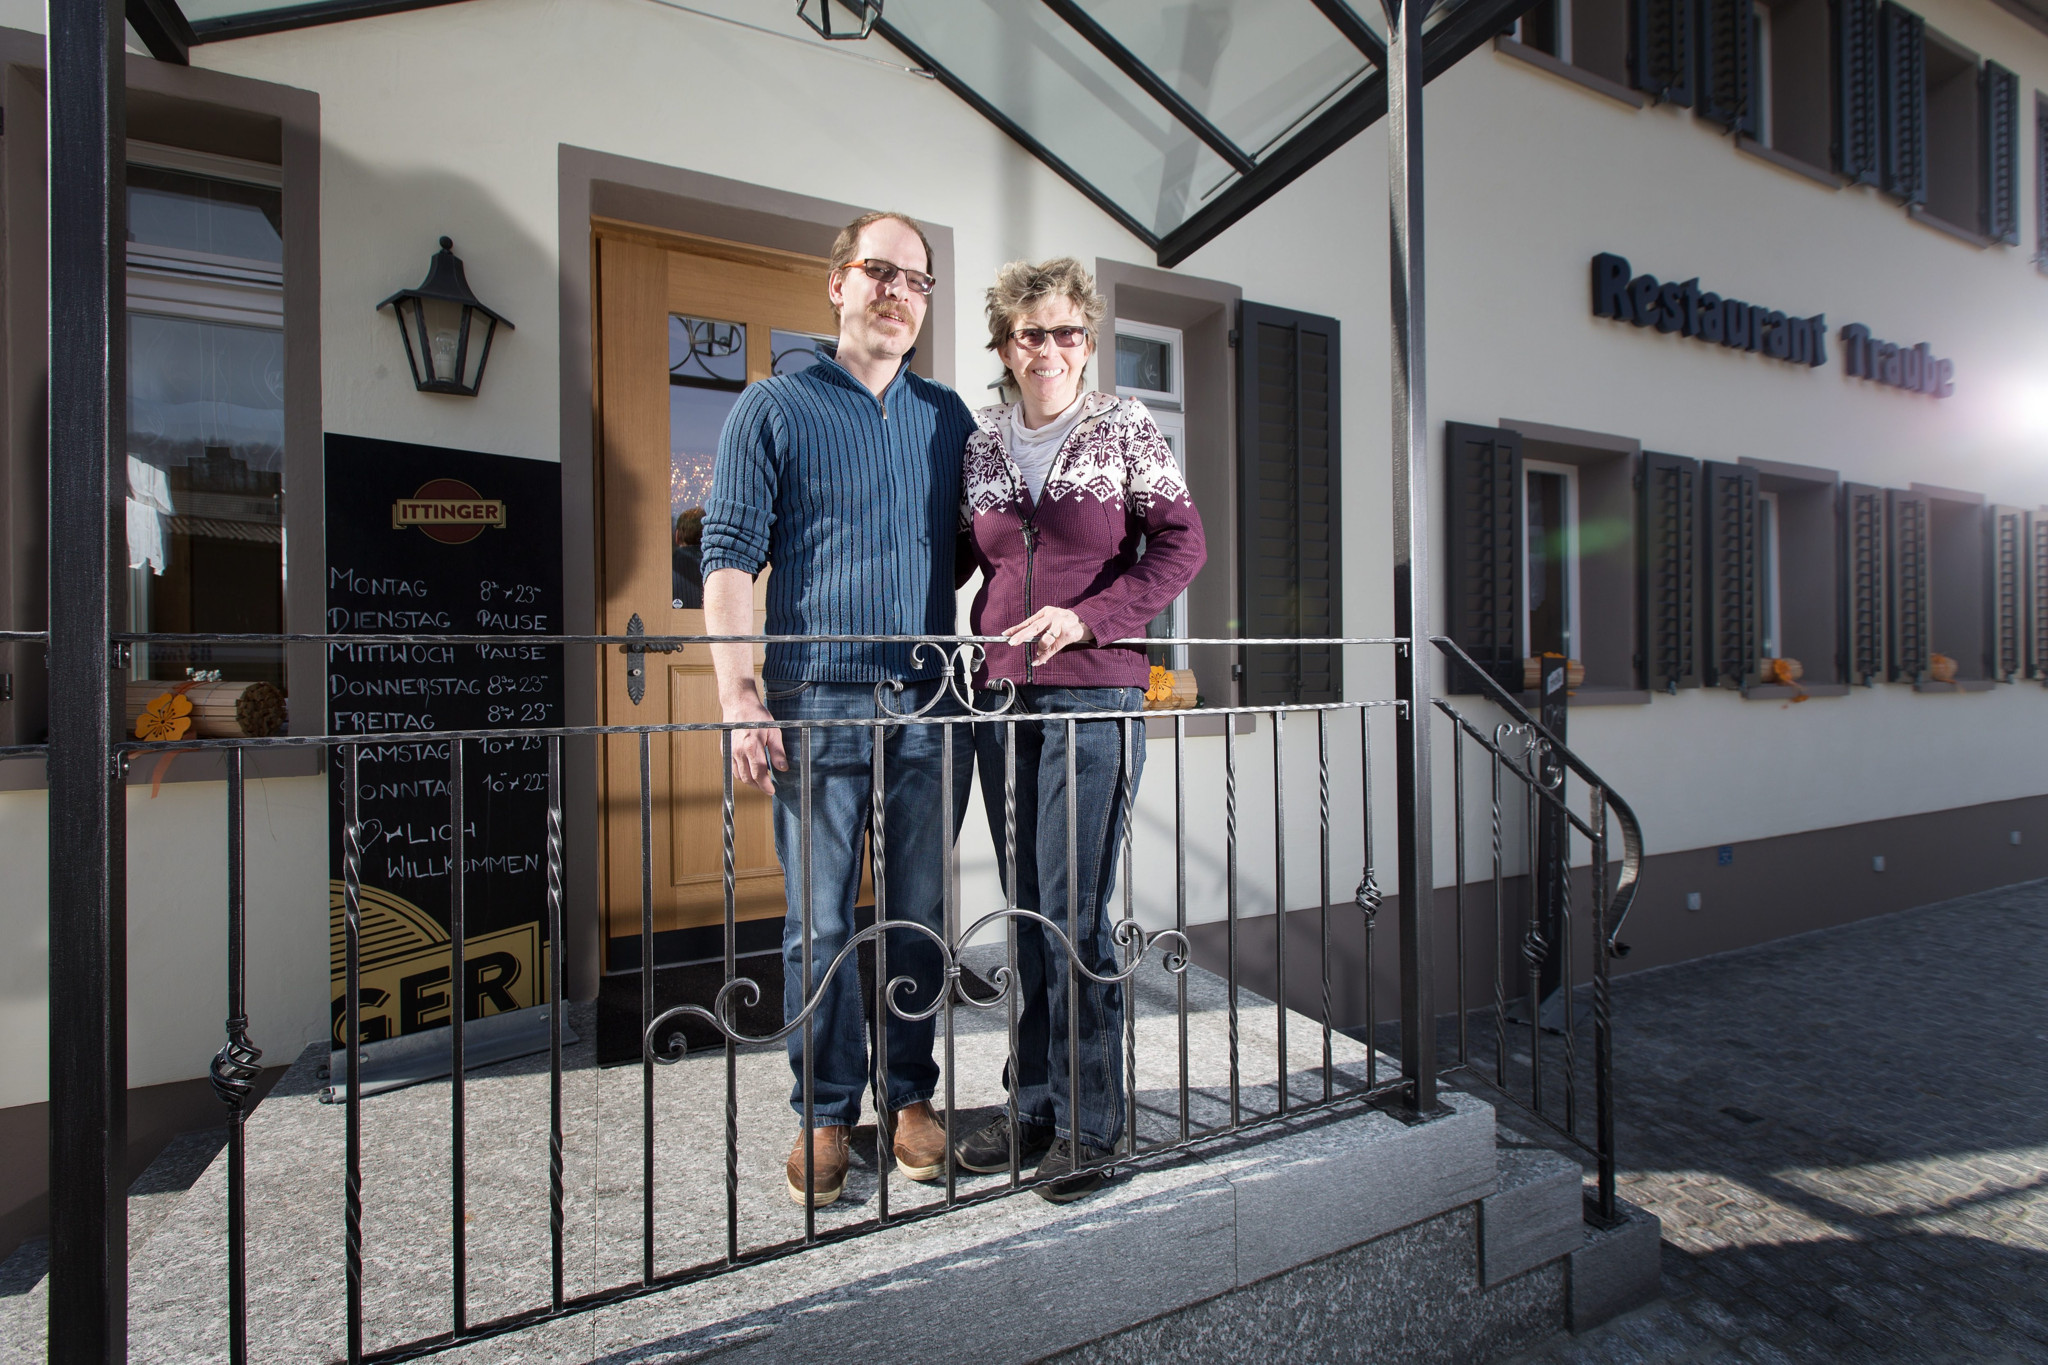 Rikon, 23.03.2015,
Reto und Jacqueline Bundi die neuen Besitzer des Restaurants Traube.

© Michele Limina 
VERWENDET 28.03.2015
